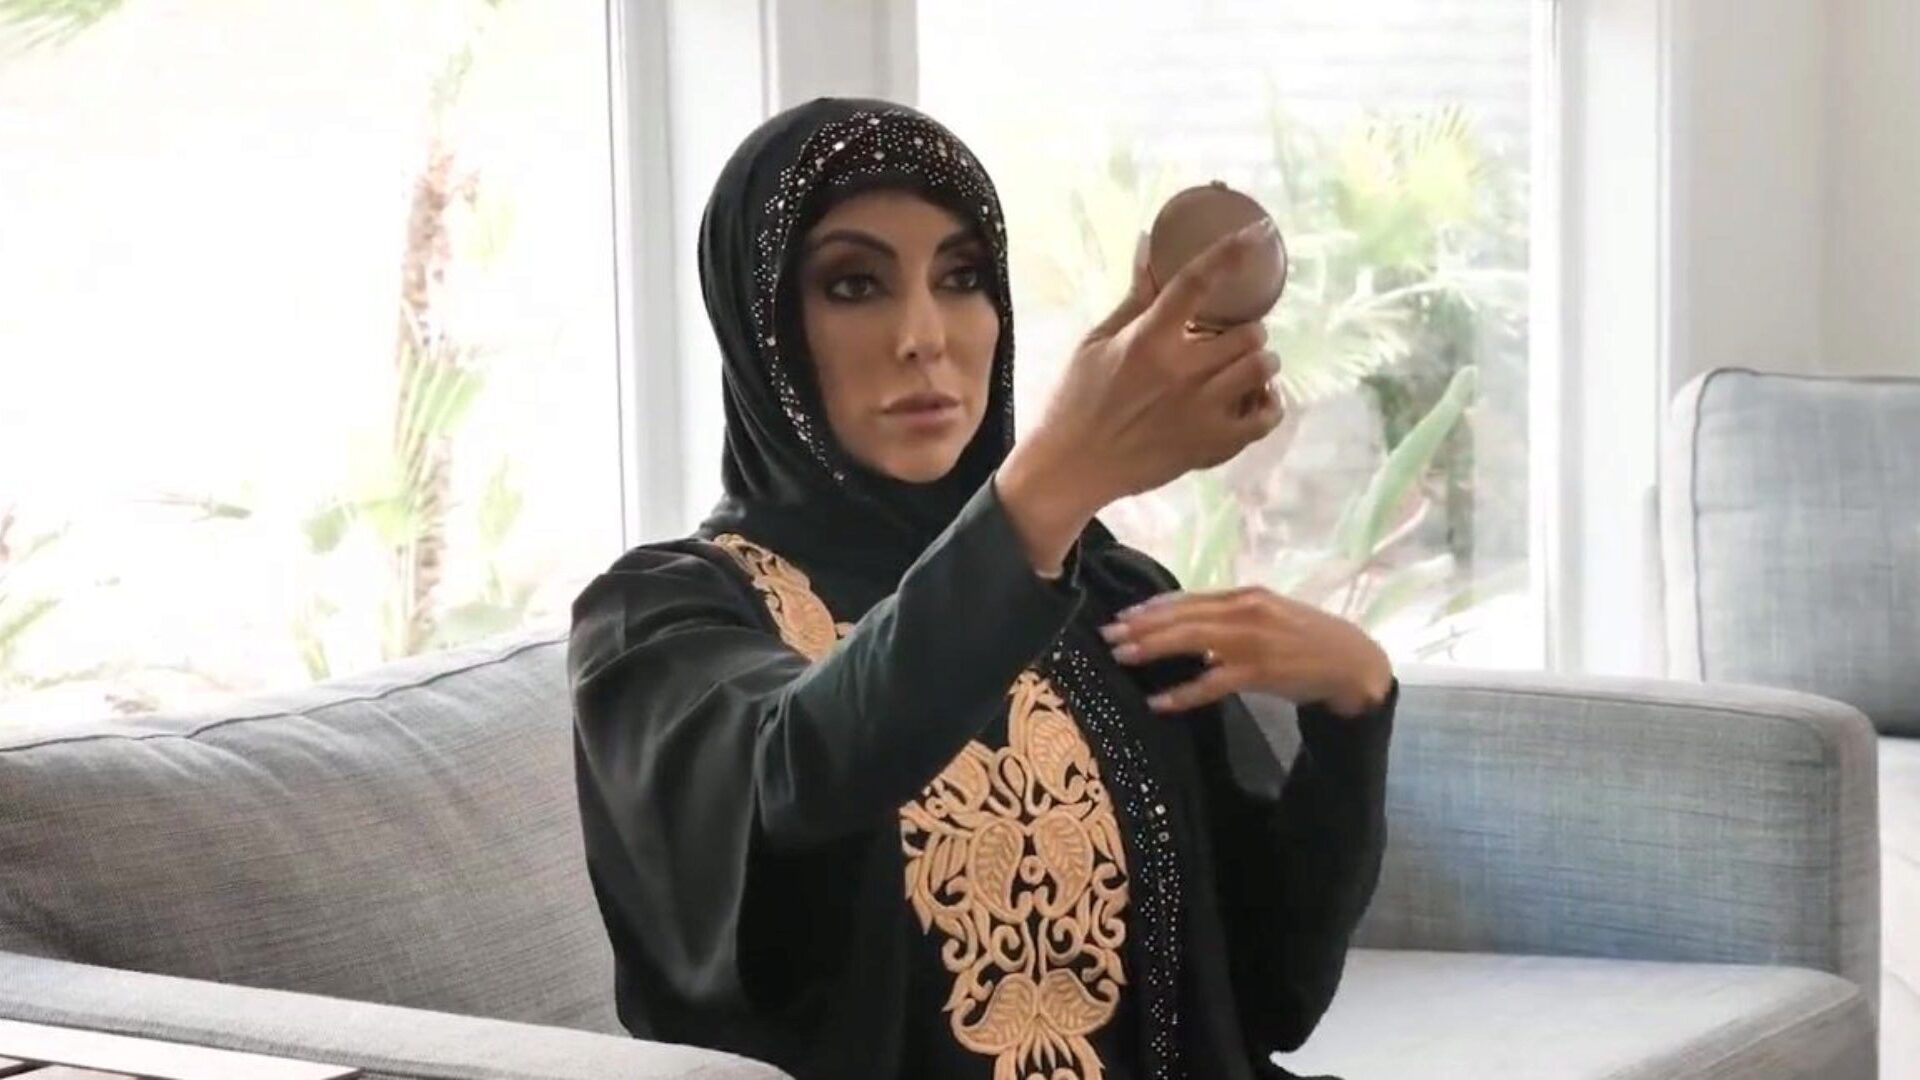 αυτή η αραβική γυναίκα ήταν ντροπιασμένη, αλλά εξακολουθούσε να πιπιλίζει ένα λιπαρό κόκορα